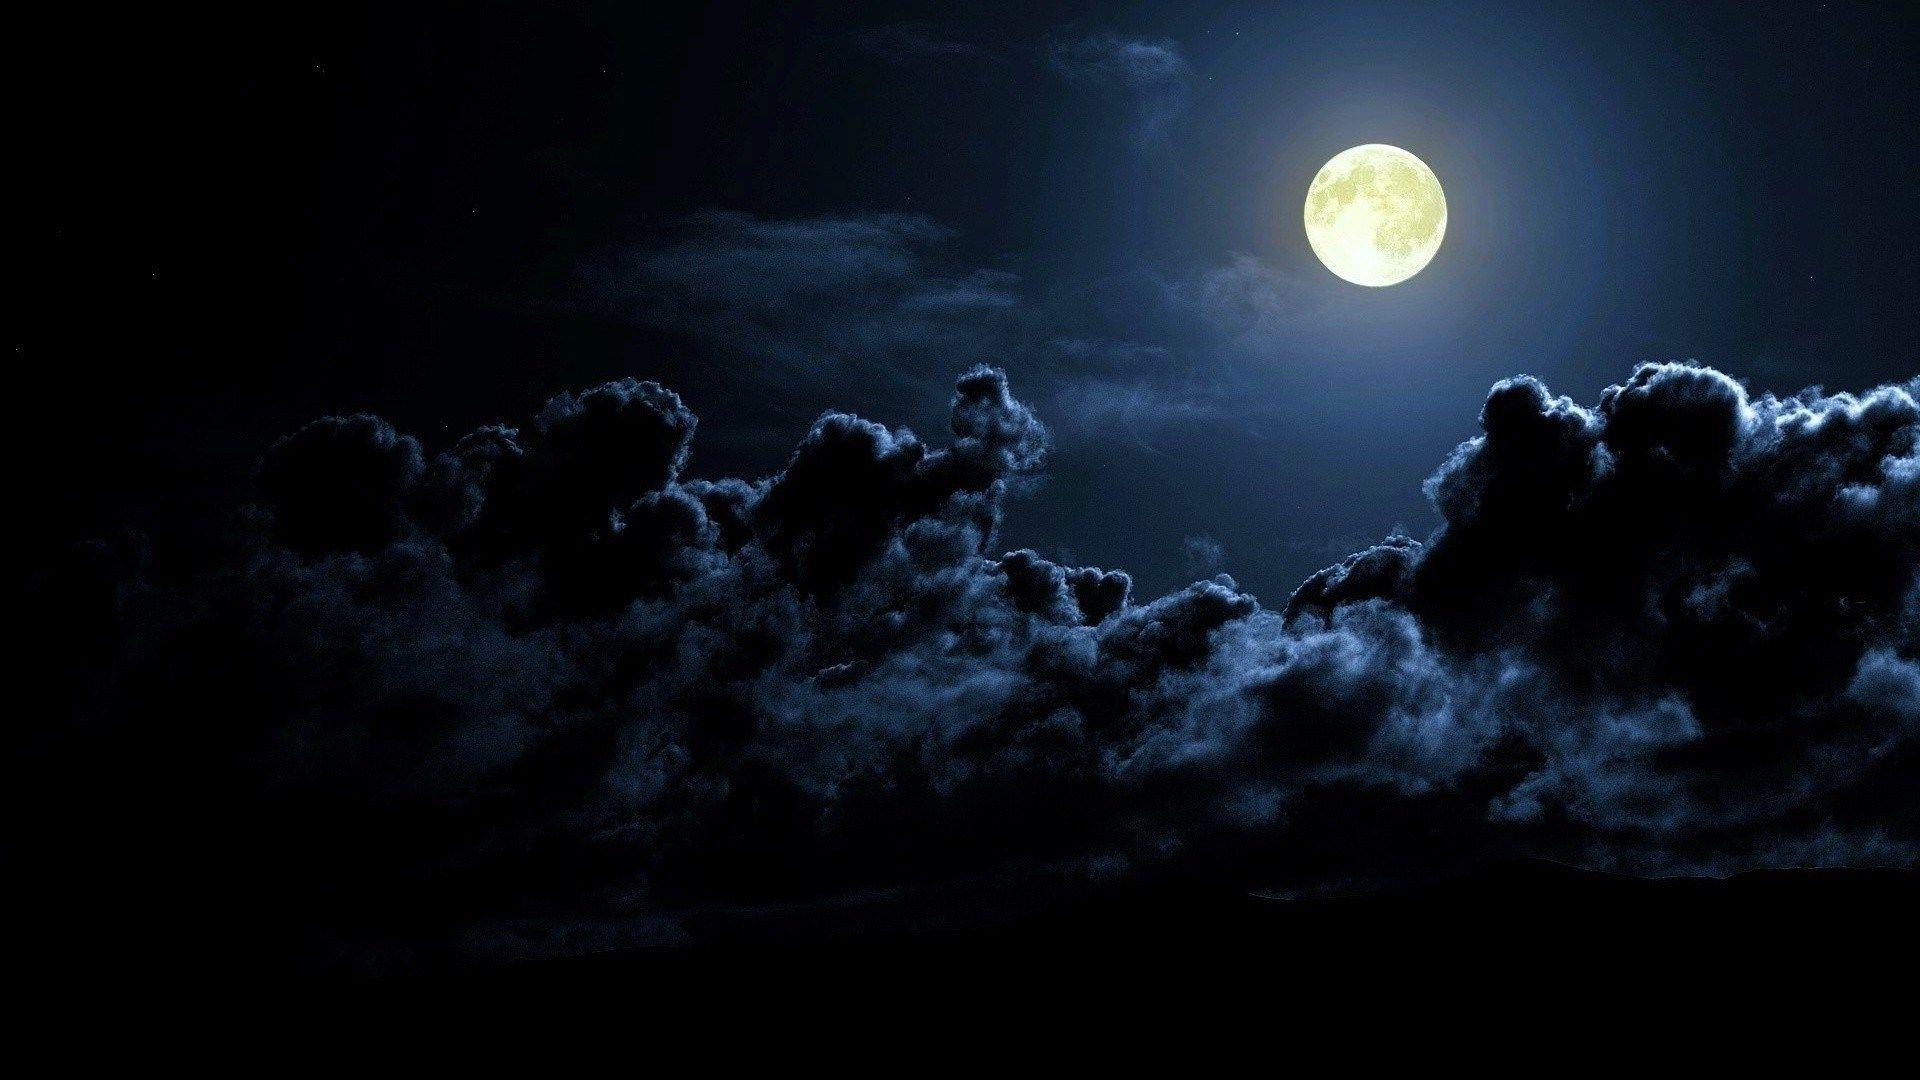 moon wallpaper for mac desktop. Full moon, Full moon night